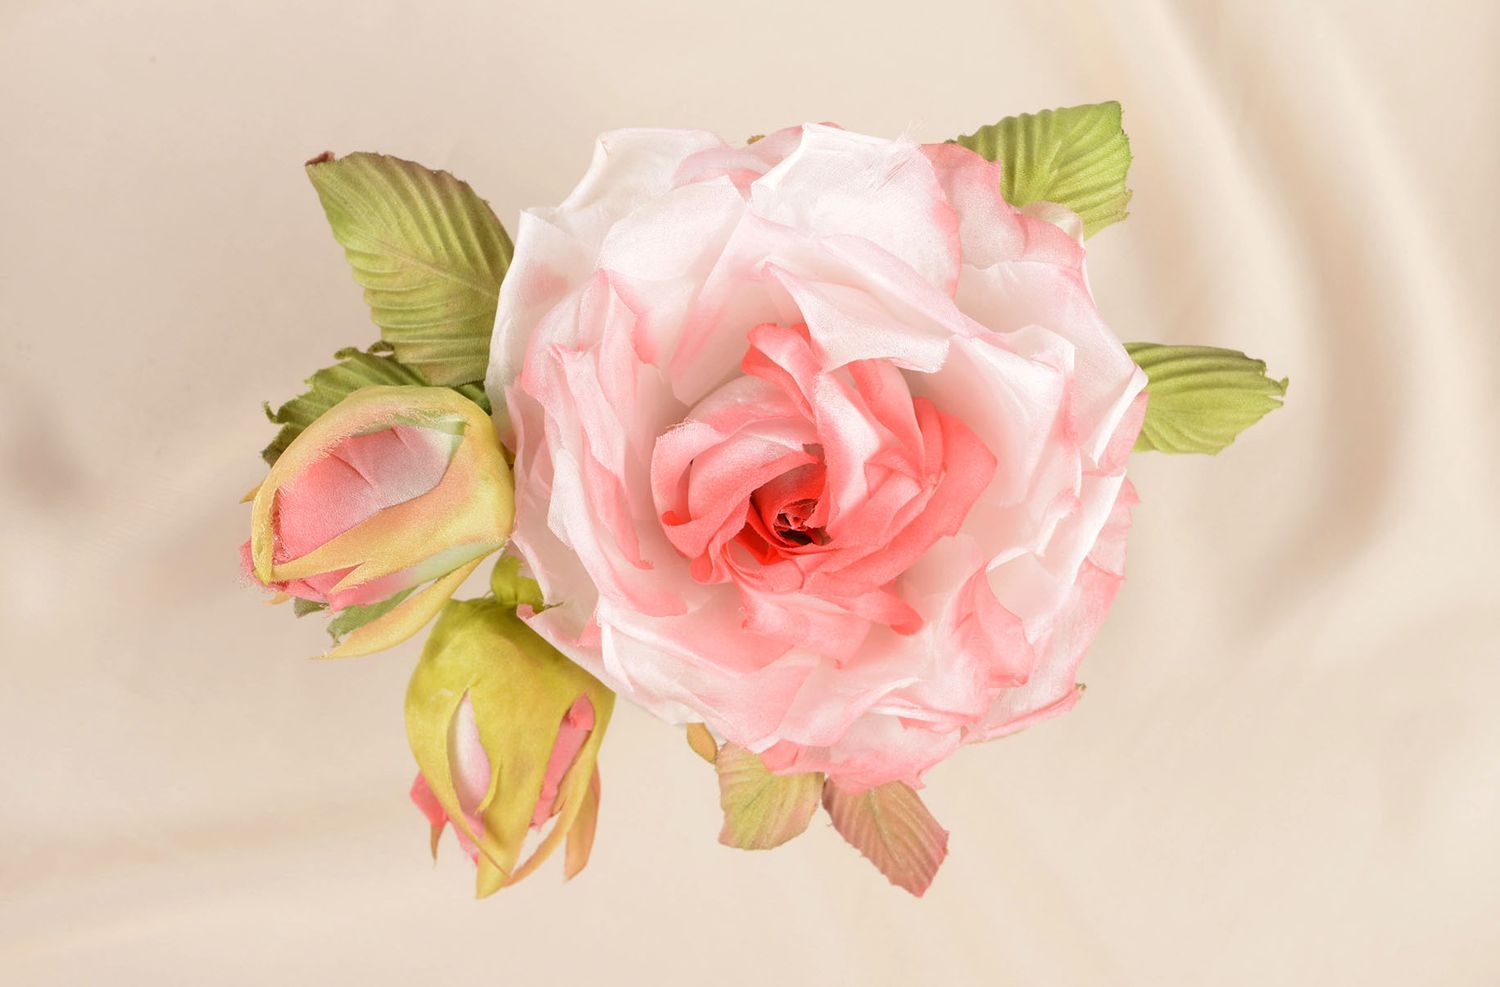 Брошь из шелка ручной работы брошь-заколка розовая роза авторская бижутерия фото 5